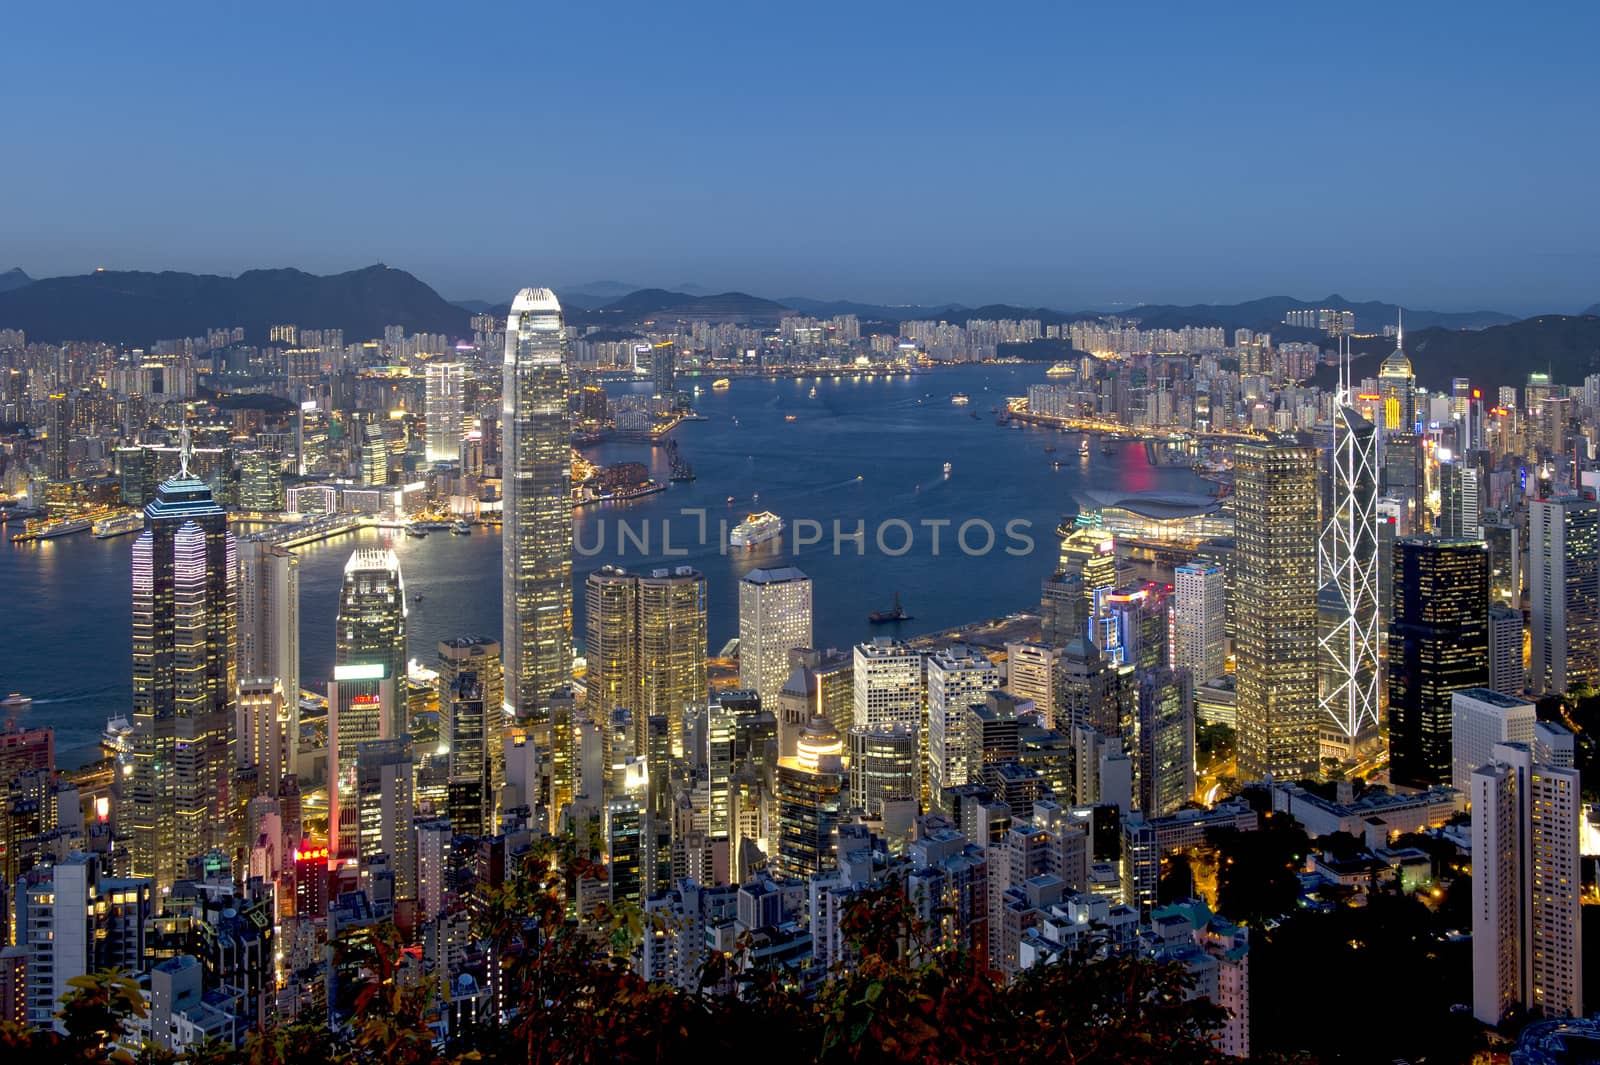 Hong Kong city at night by think4photop